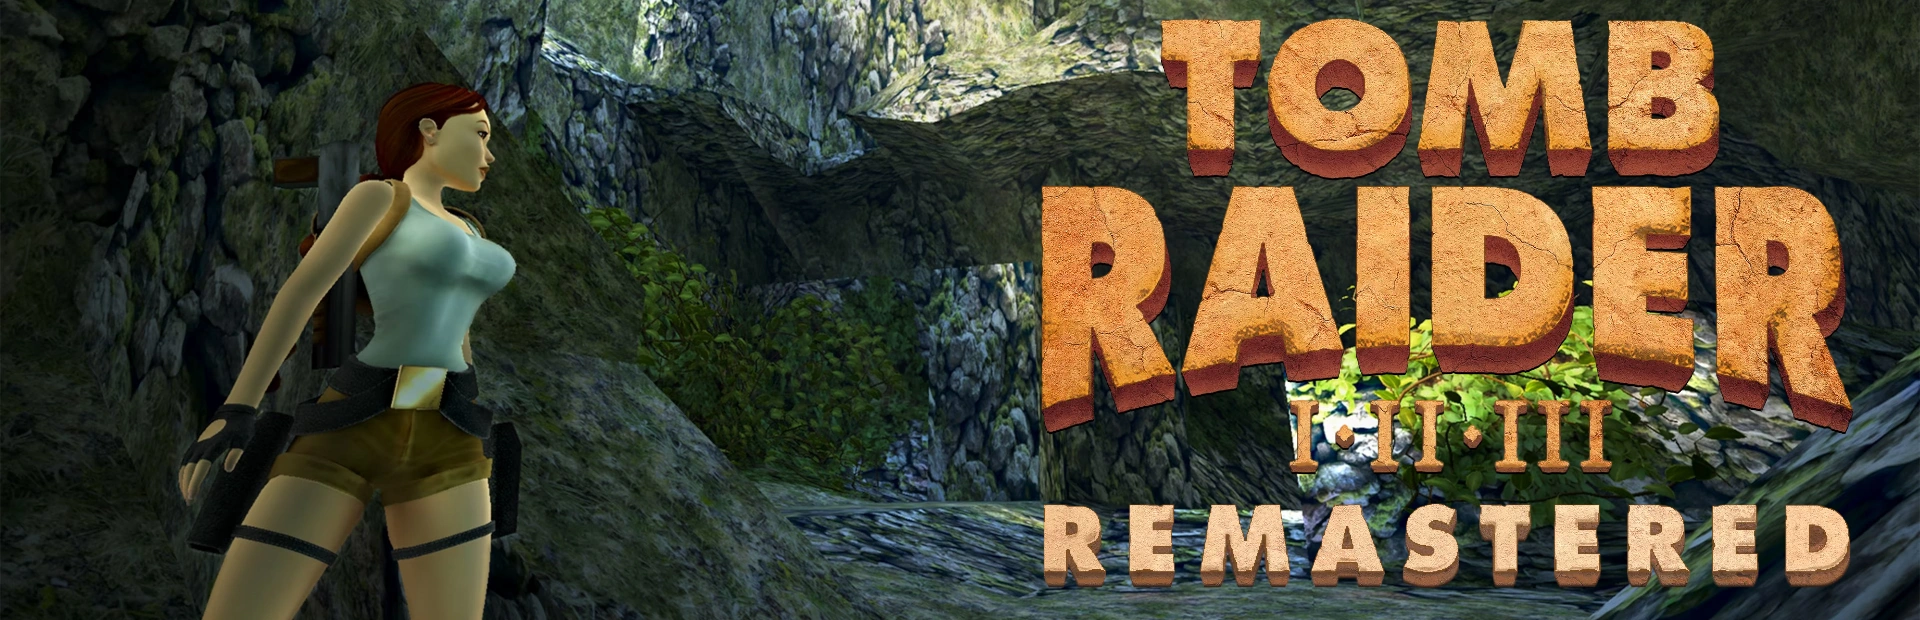 دانلود بازی Tomb Raider I-III Remastered Starring Lara Croft برای کامپیوتر | گیمباتو